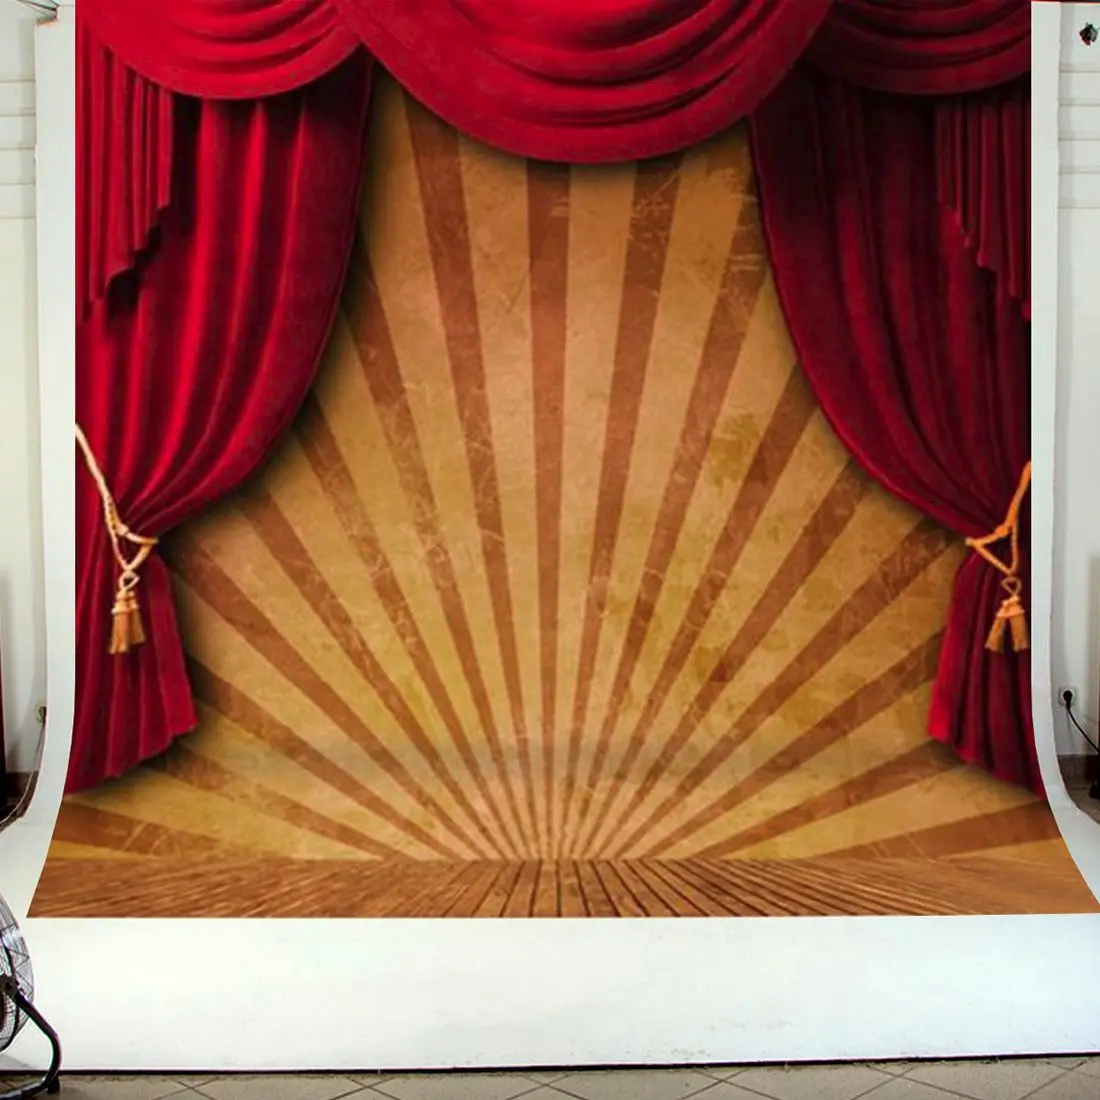 10x10 футов Цирк Красный занавес сценический фон для студийной фотосъемки виниловый